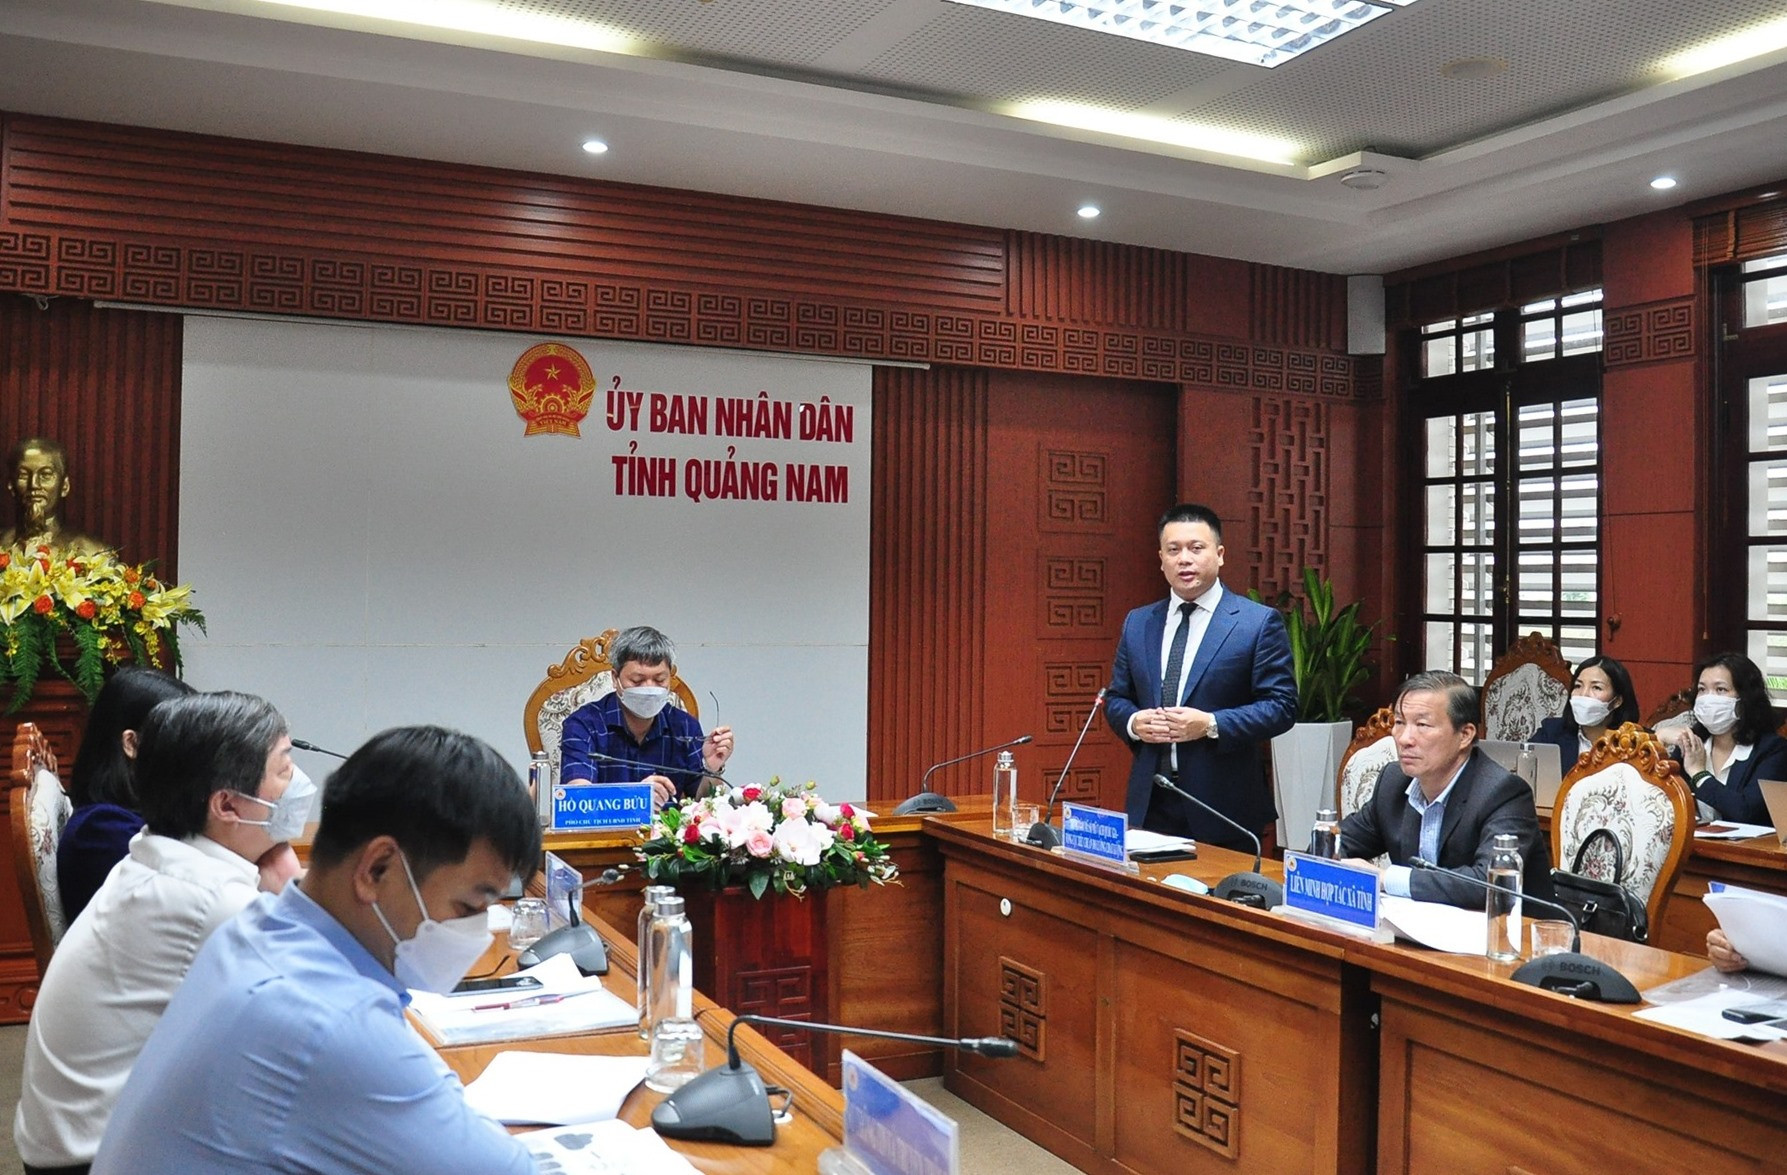 Ông Bùi Bá Chính - Phó Giám đốc phụ trách Trung tâm Mã số - mã vạch (Bộ KH&CN) trình bày giải pháp công nghệ TXNG sản phẩm, hàng hóa. Ảnh: S.A